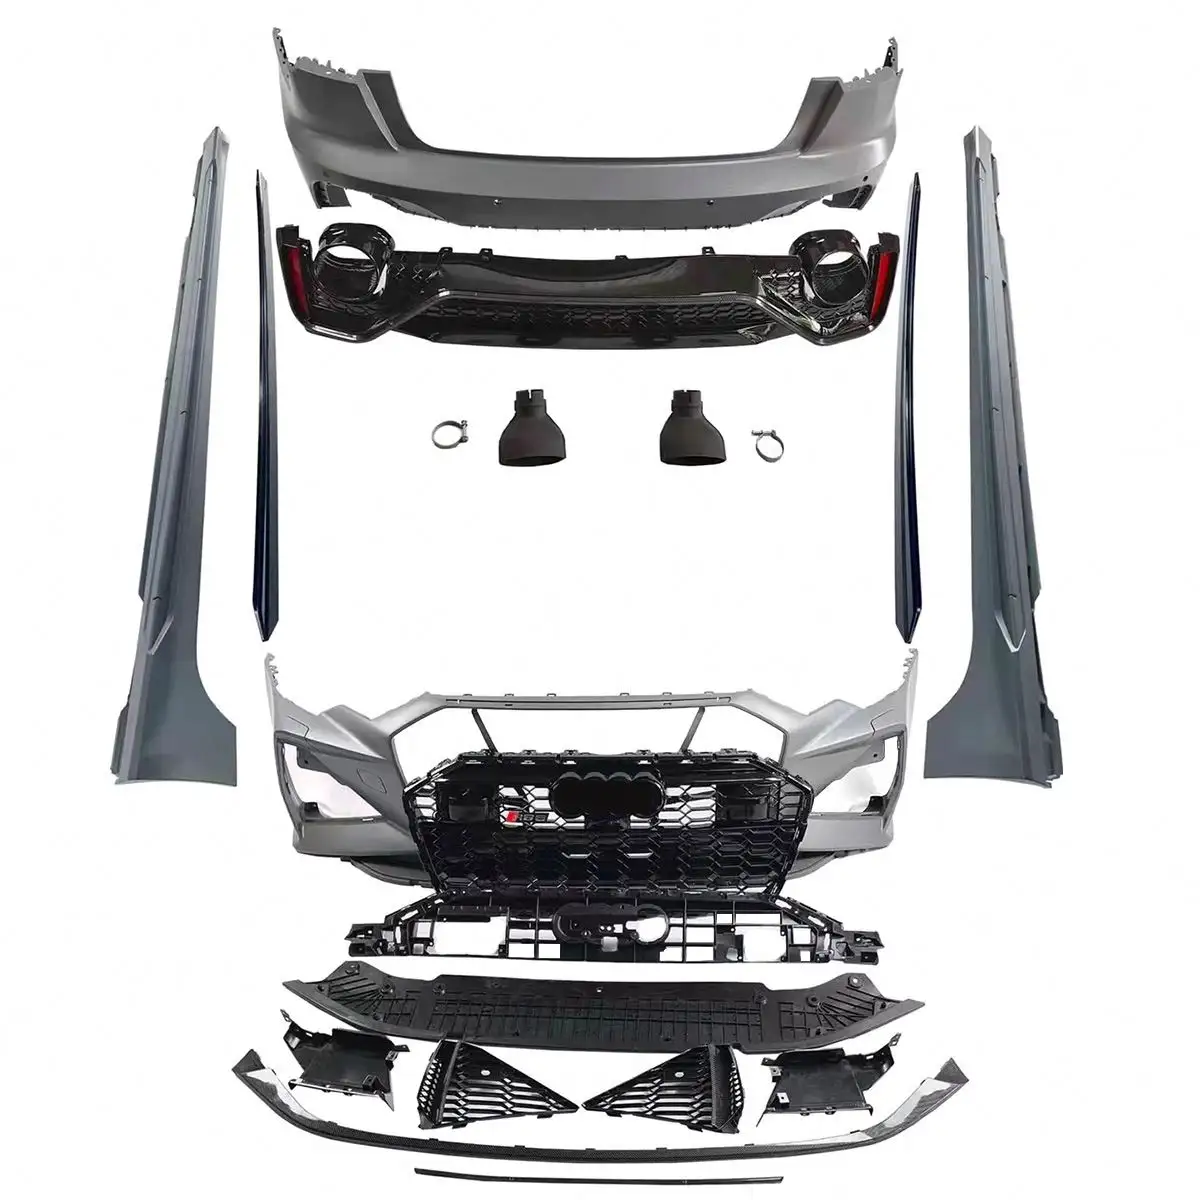 Kit carrosserie amélioré style RS6 pour Audi A6 C8 2019-2022 kit carrosserie de conversion avec pare-chocs calandre diffuseur arrière avec embout d'échappement